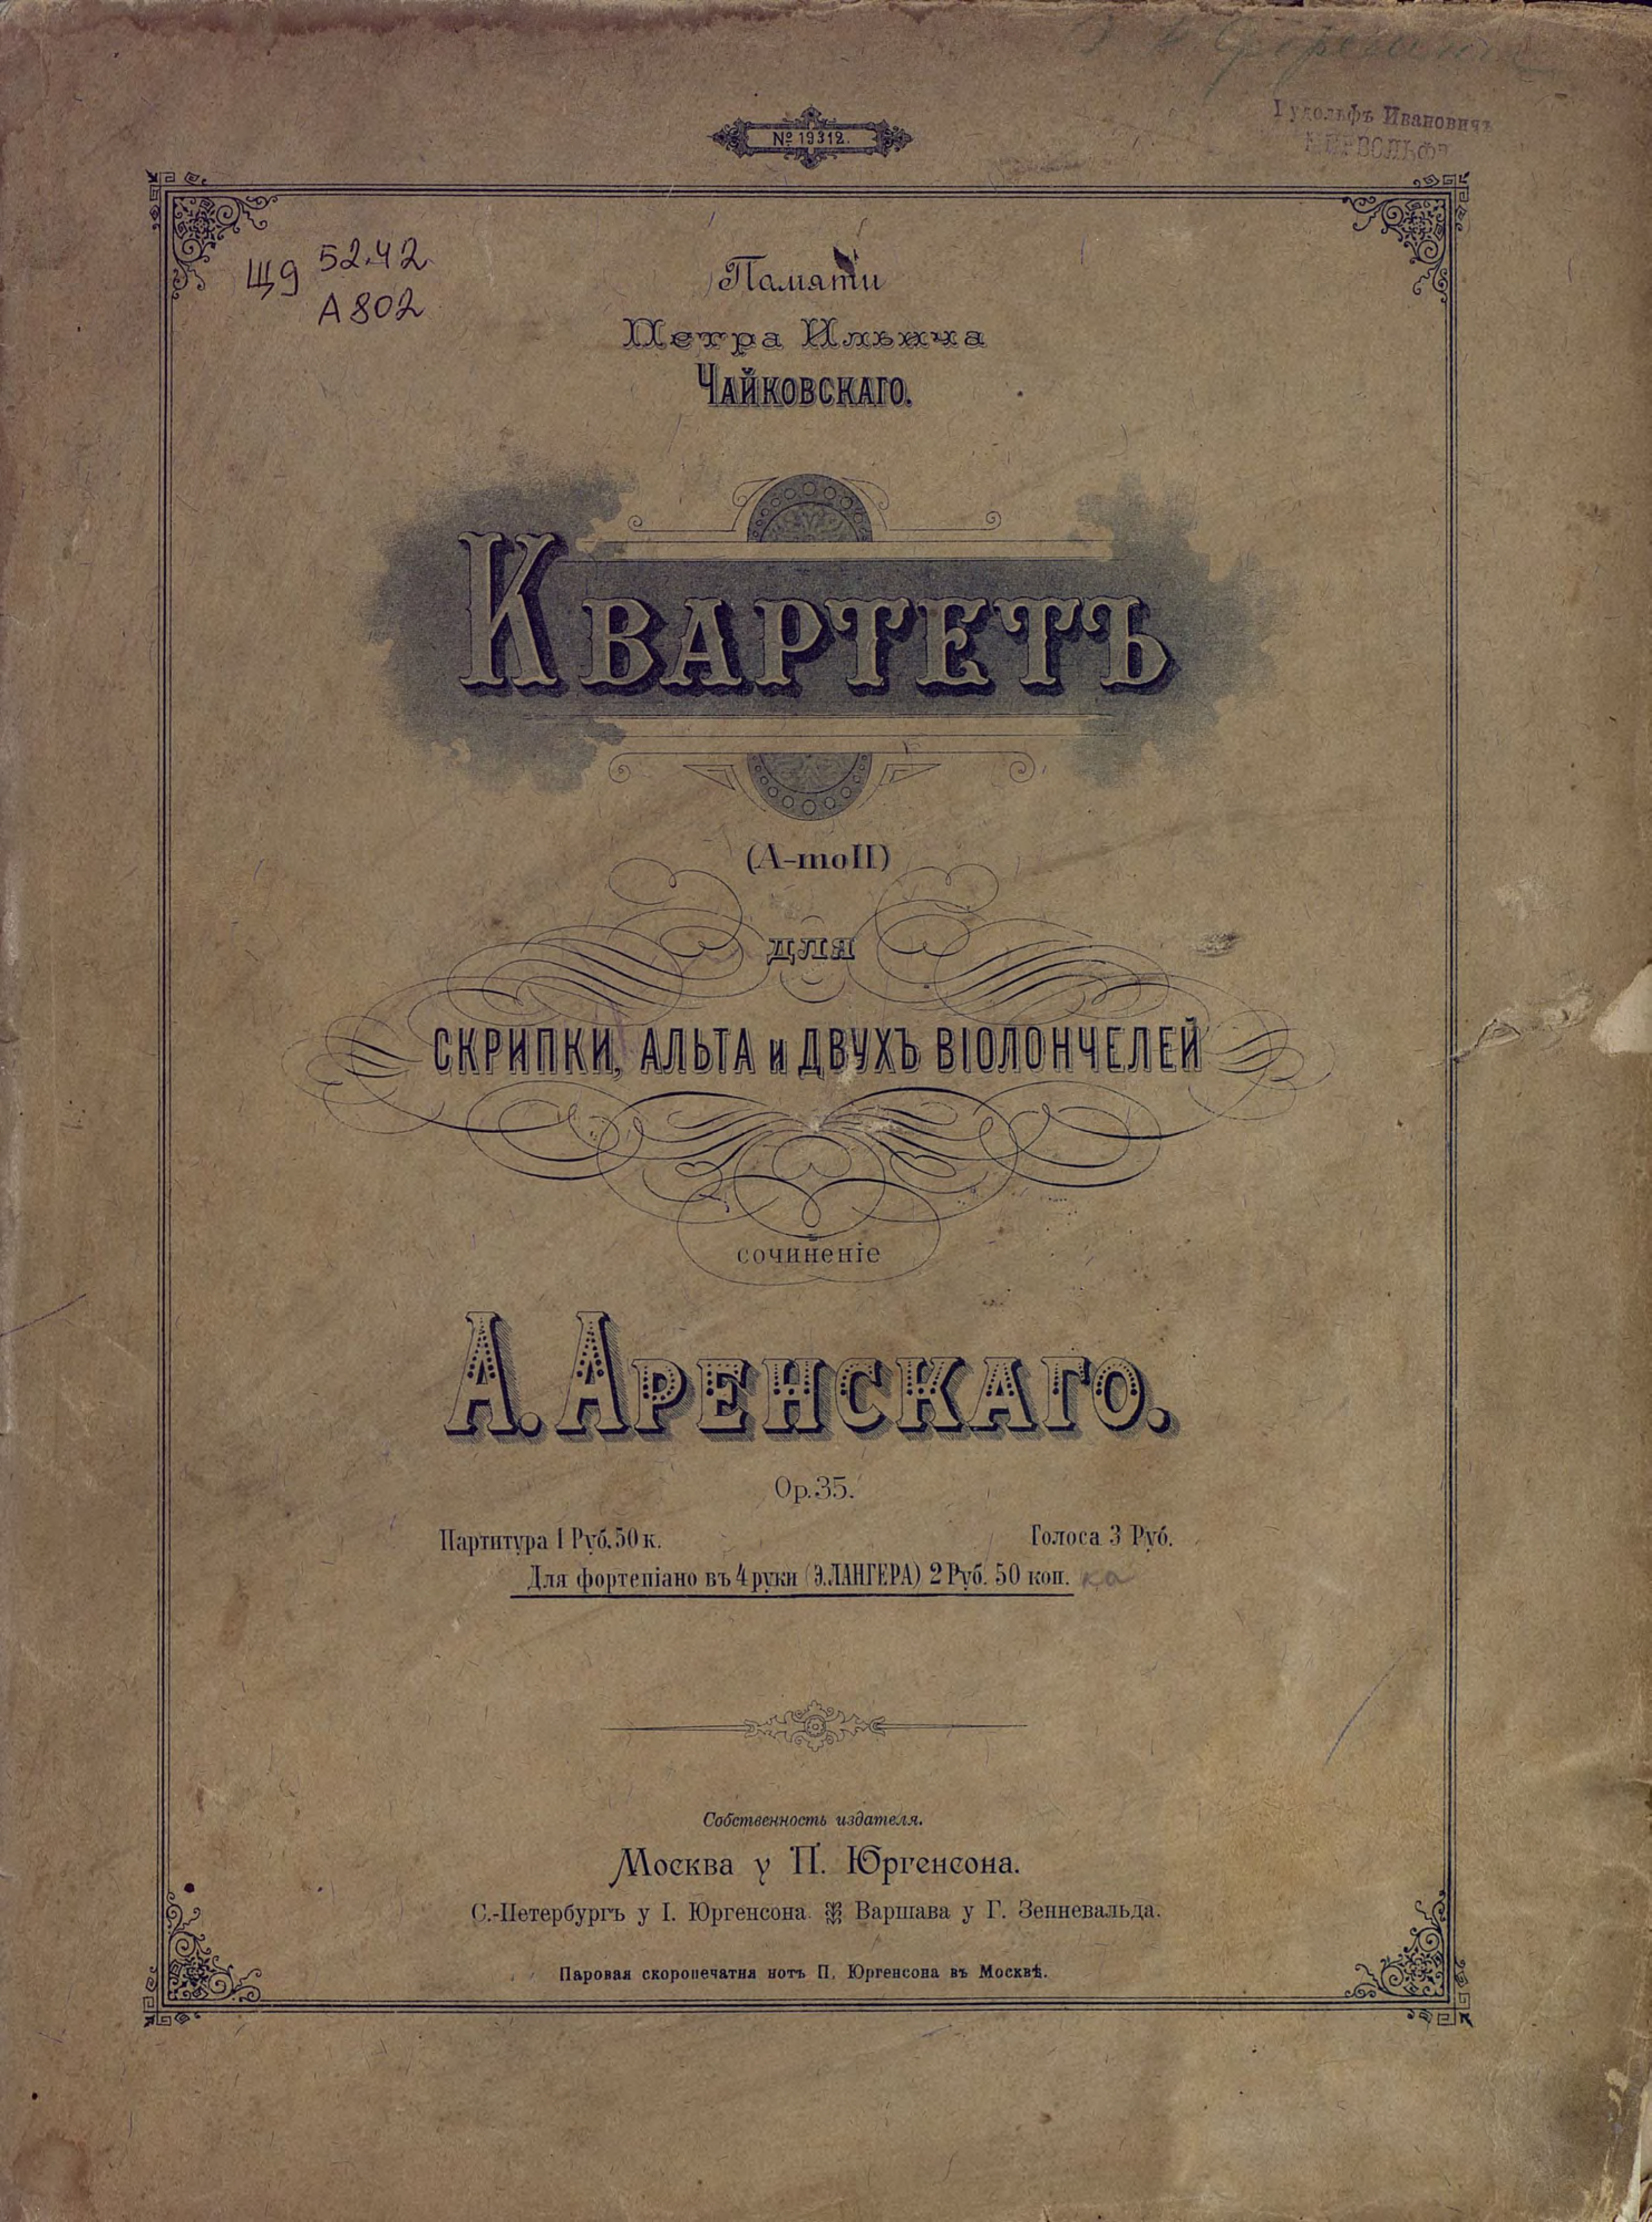 Антон Степанович Аренский Квартет (a moll) для скрипки, альта и 2-х виолончелей